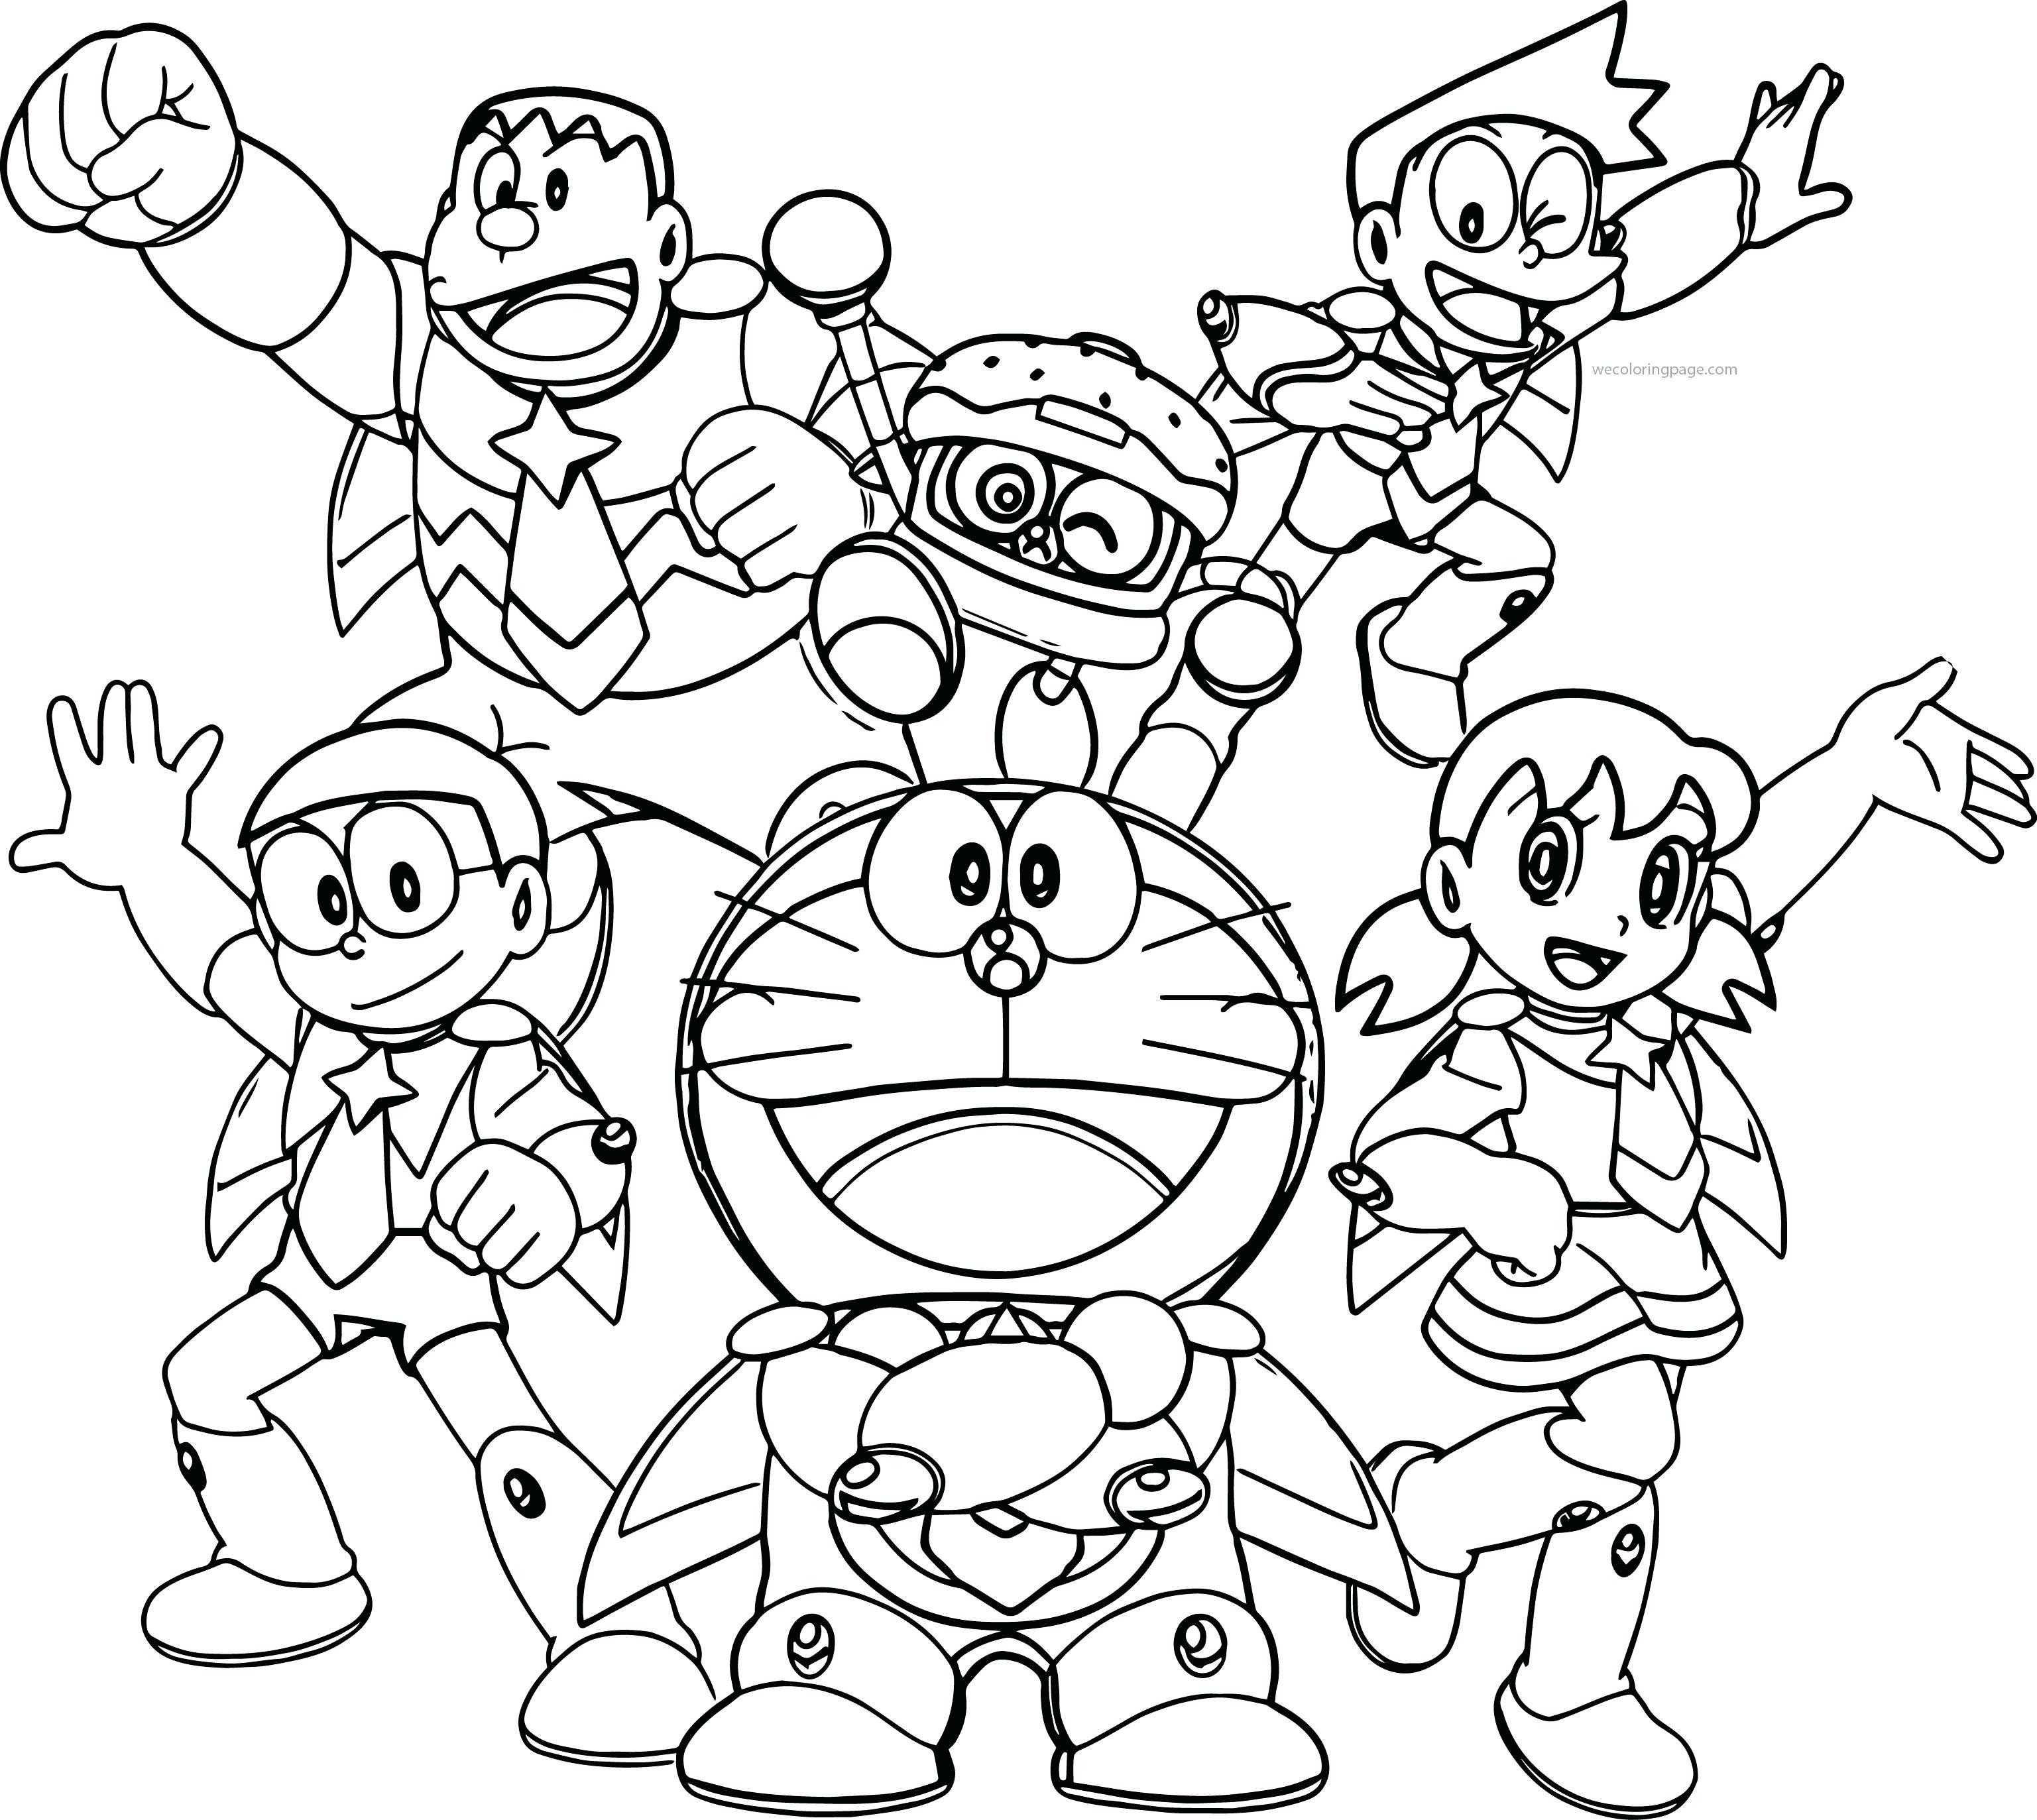 Tranh tô màu Doraemon và những người bạn